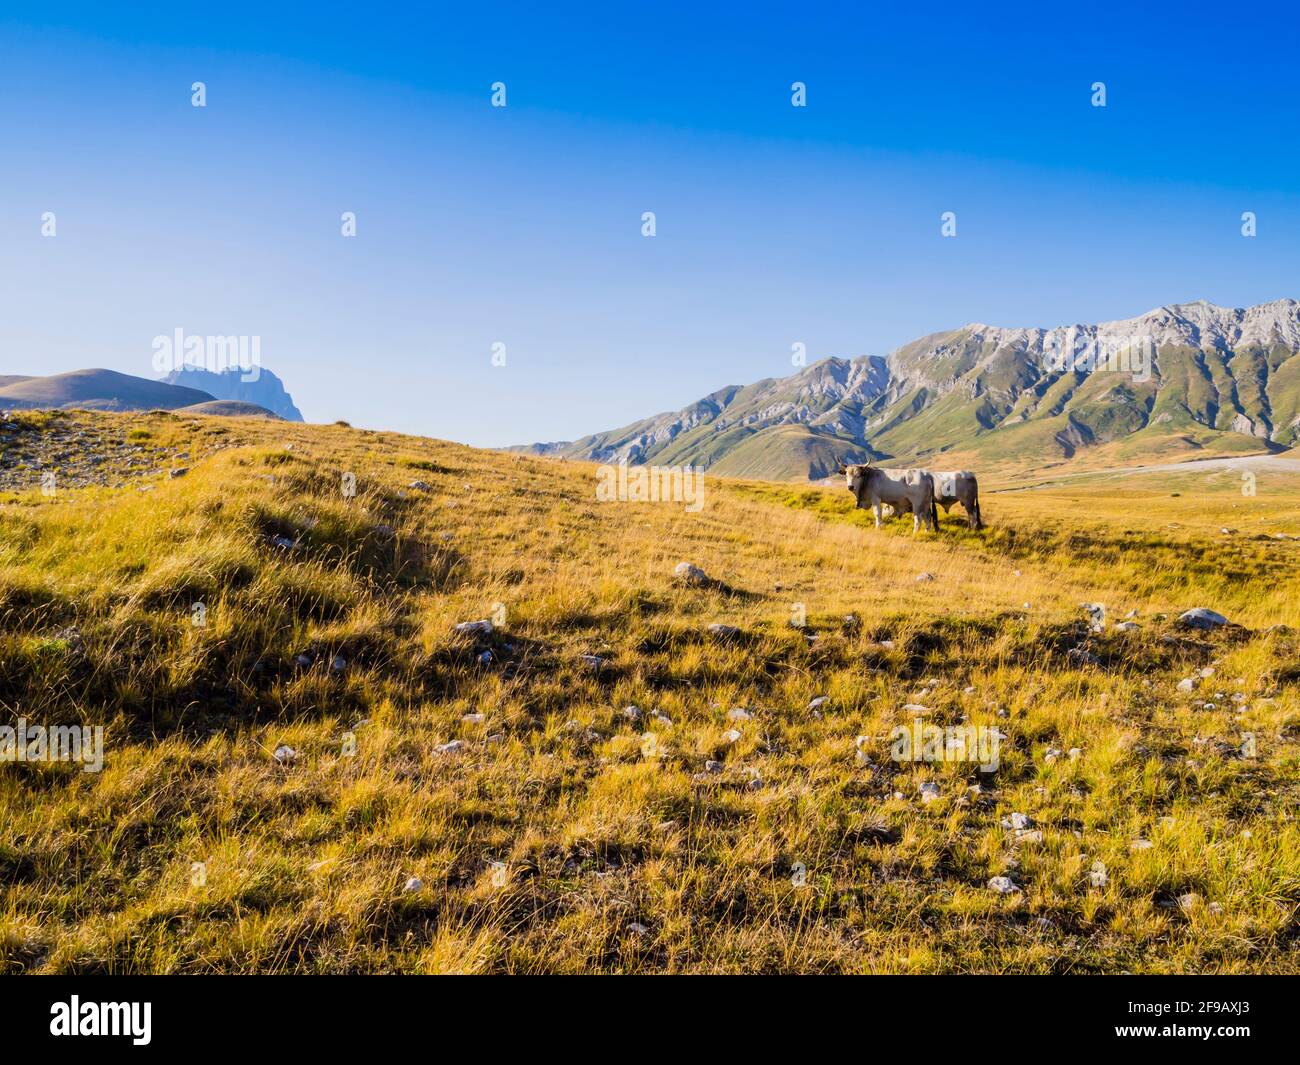 Paesaggio suggestivo con mucche pascolanti nei prati della valle di campo Imperatore, Parco Nazionale del Gran Sasso, Abruzzo, Italia Foto Stock